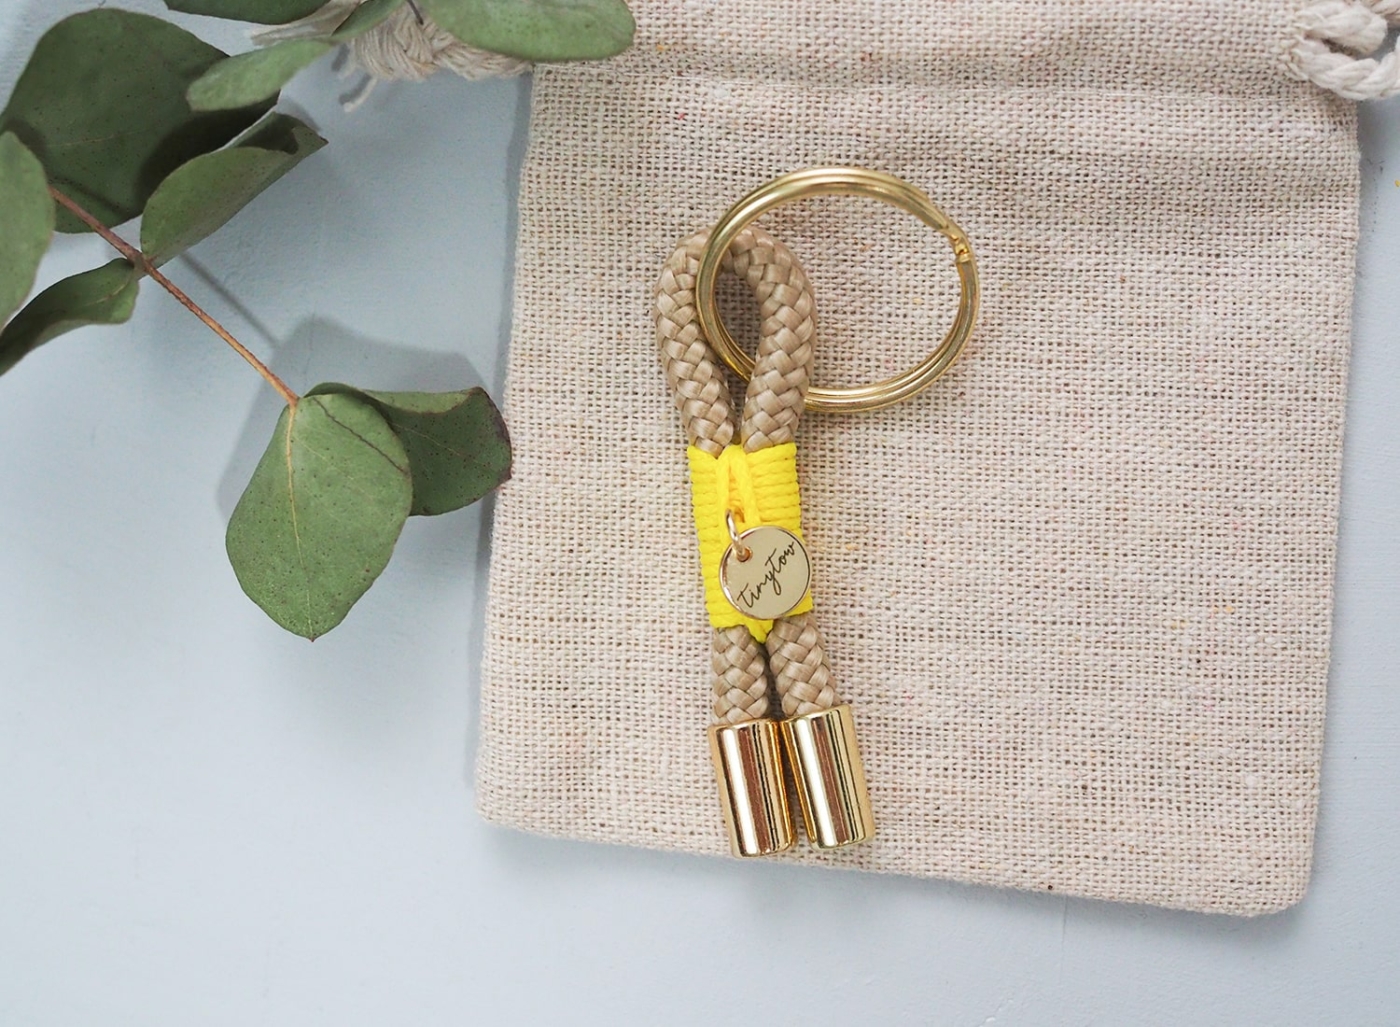 Schlüsselanhänger aus beigefarbenem Tau mit leuchtgelber Takelung, goldenem Schlüsselring.